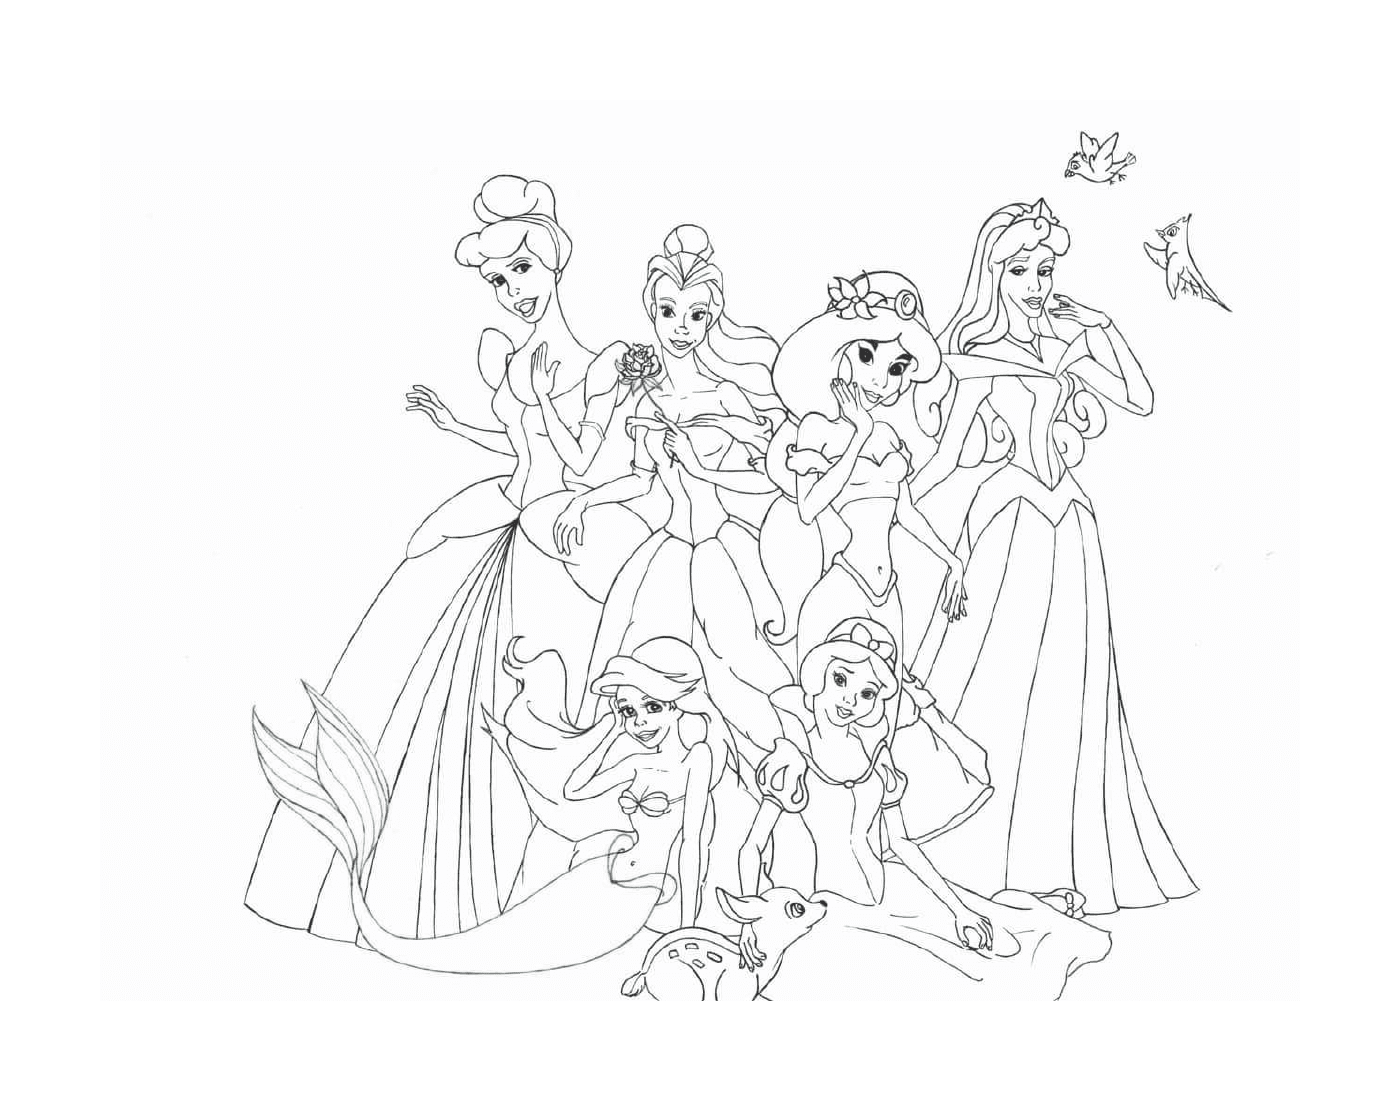  Un gruppo di principesse Disney sedute e in piedi insieme 